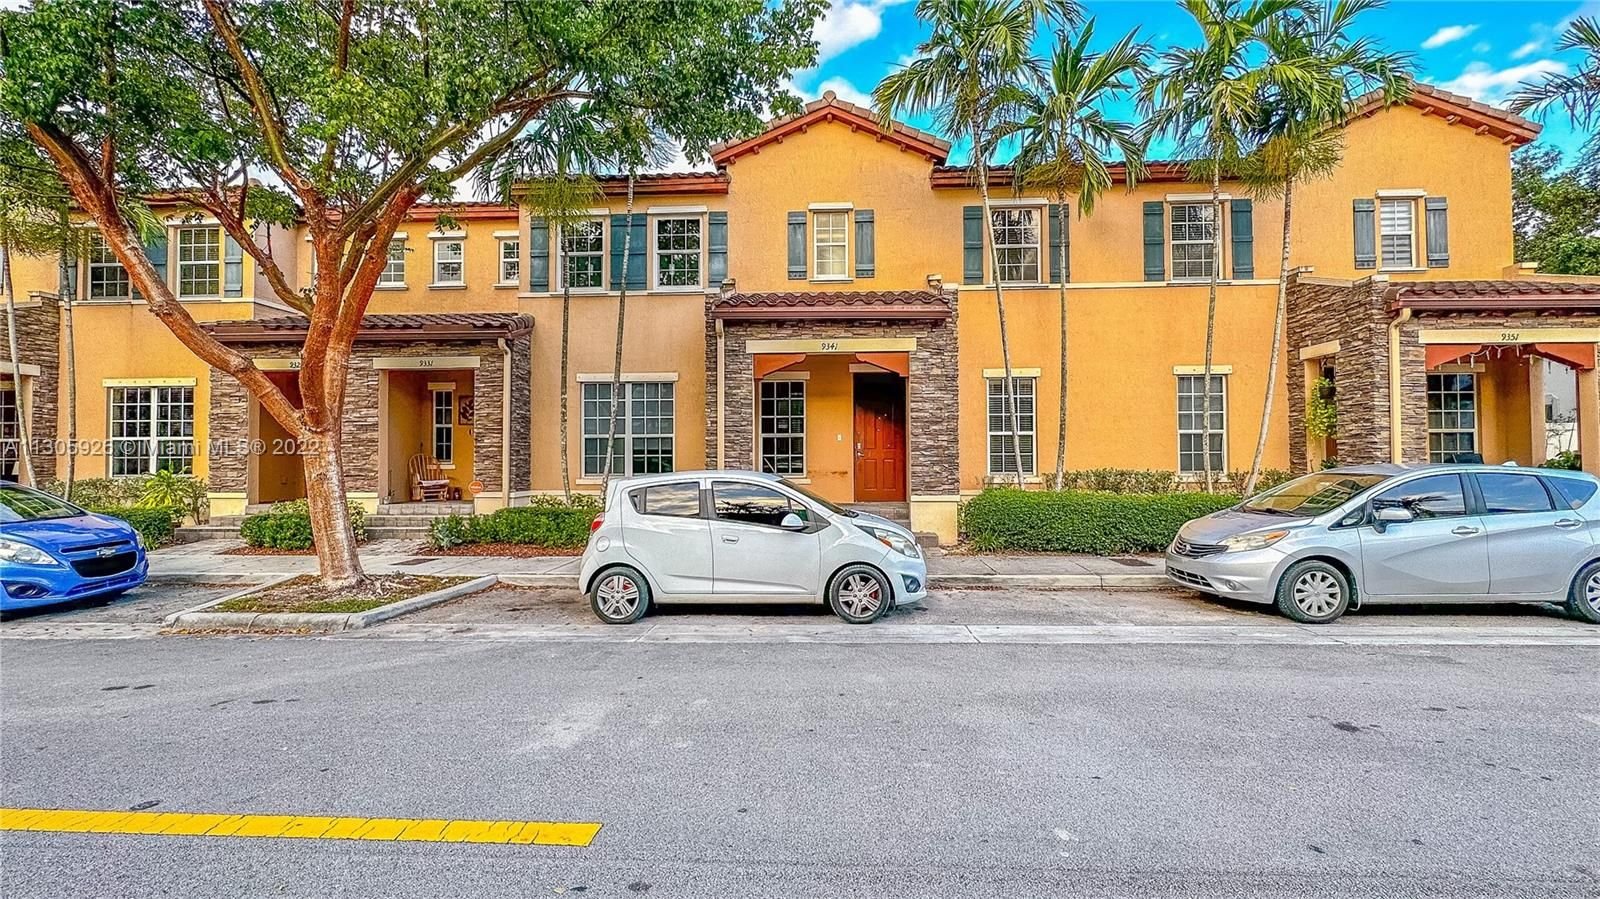 Real estate property located at 9341 170th Psge #1, Miami-Dade County, Miami, FL